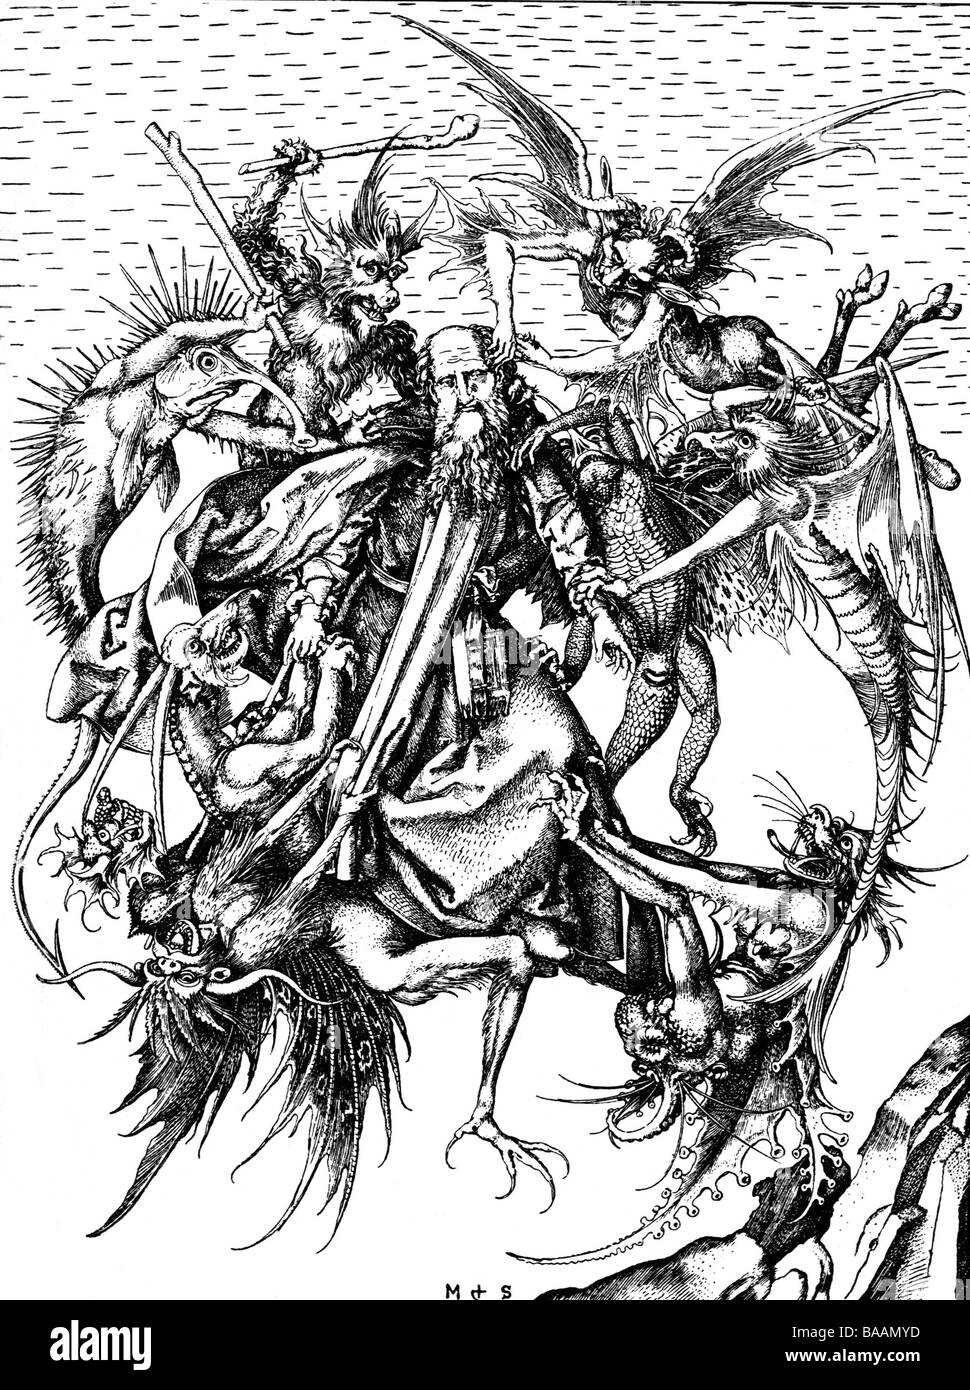 Antonius der Große, ca. 251 - ca. 356, ägyptische Saint, volle Länge, "Die Versuchung des Heiligen Antonius", nach Kupferstich von Martin Schongauer, Jahrhundert, Artist's Urheberrecht nicht gelöscht werden Stockfoto